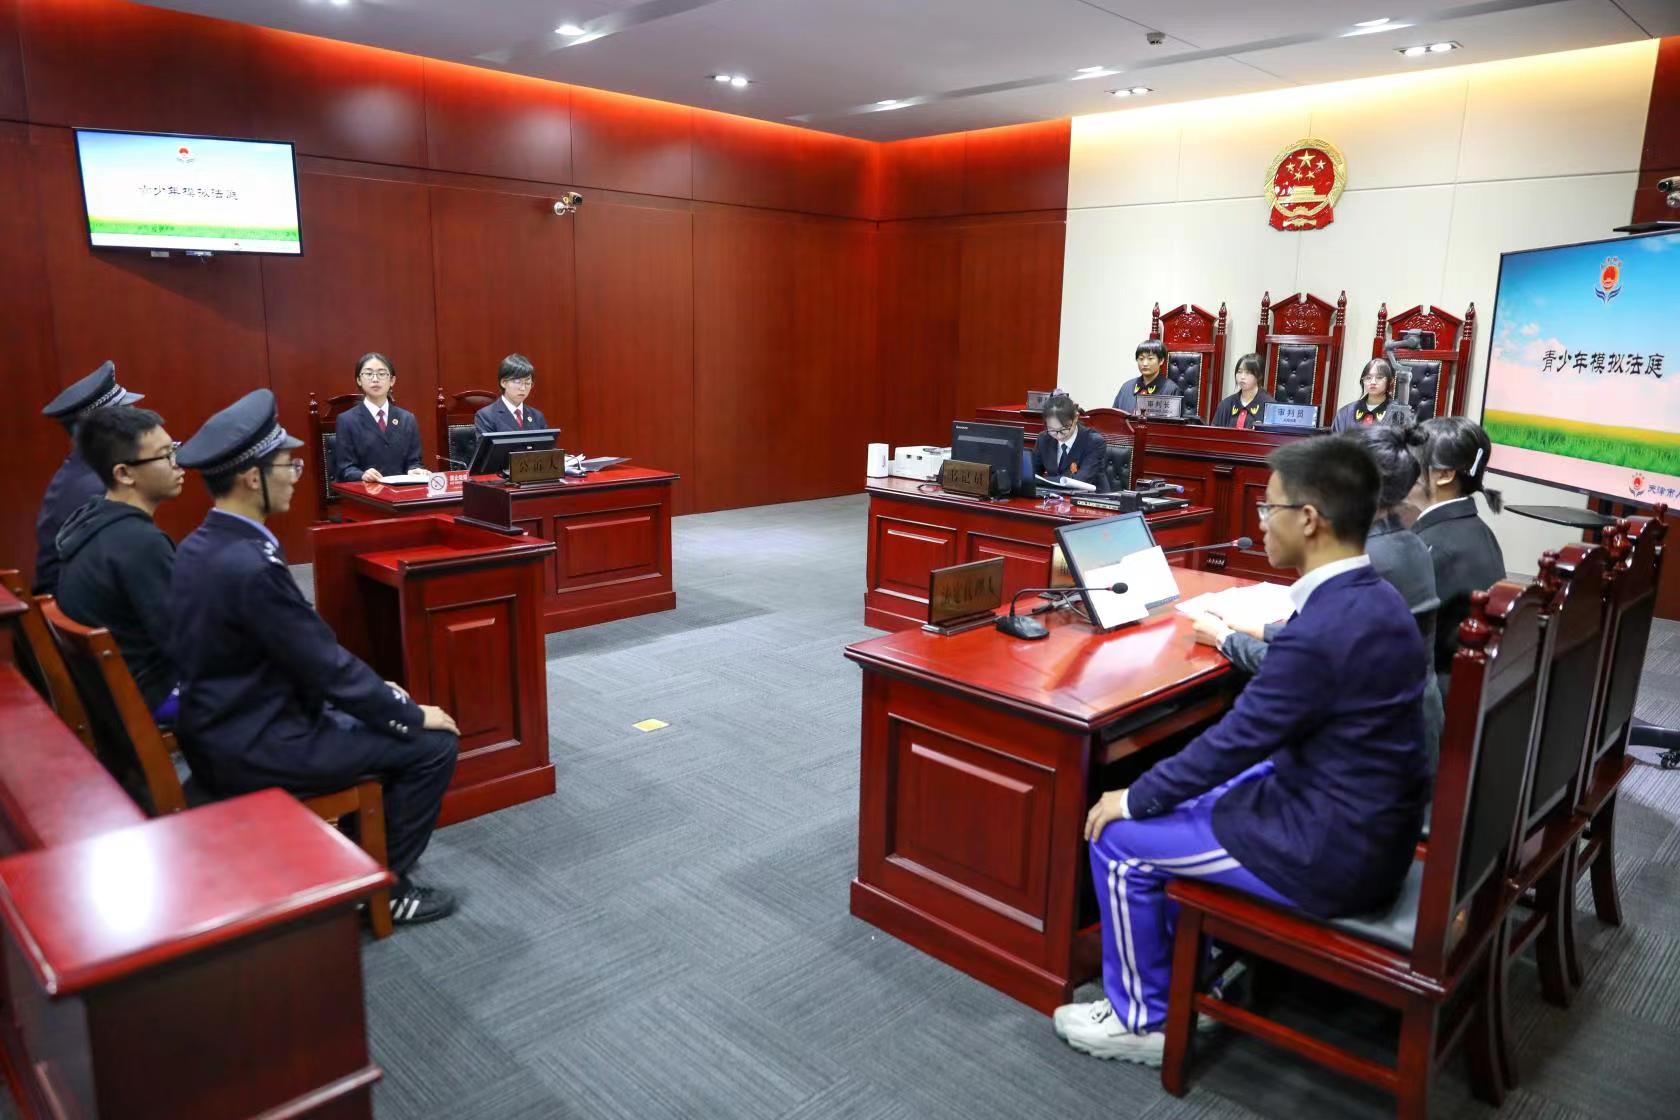 图为天津市第二新华中学学生正在演出法治情景剧。 